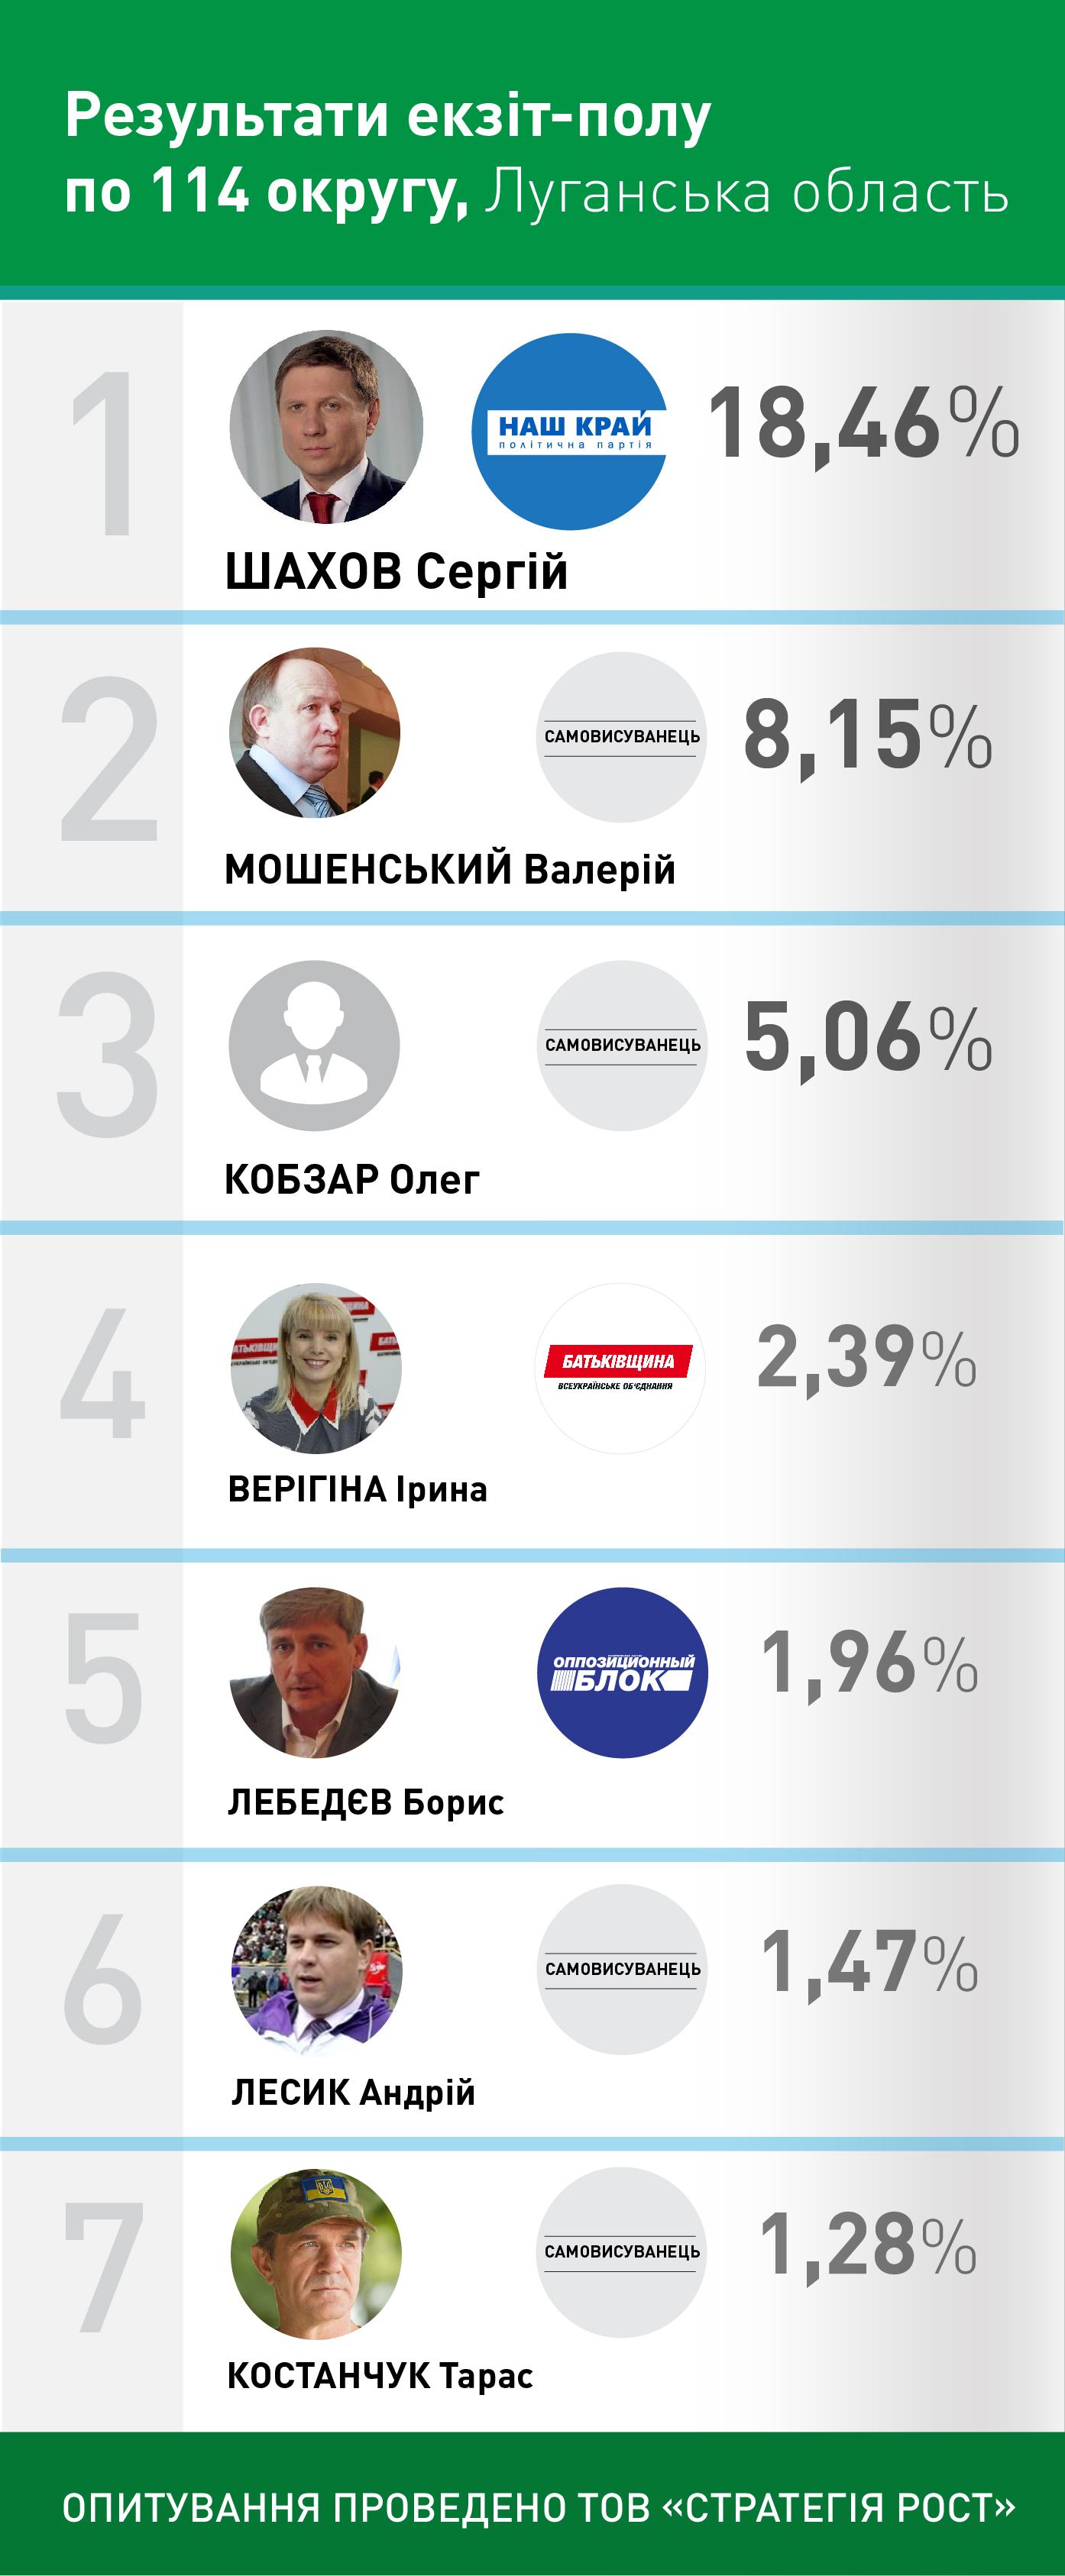 Екзит-пол: У 114 луганському окрузі перемагає представник "Нашого краю" Сергій Шахов - фото 1